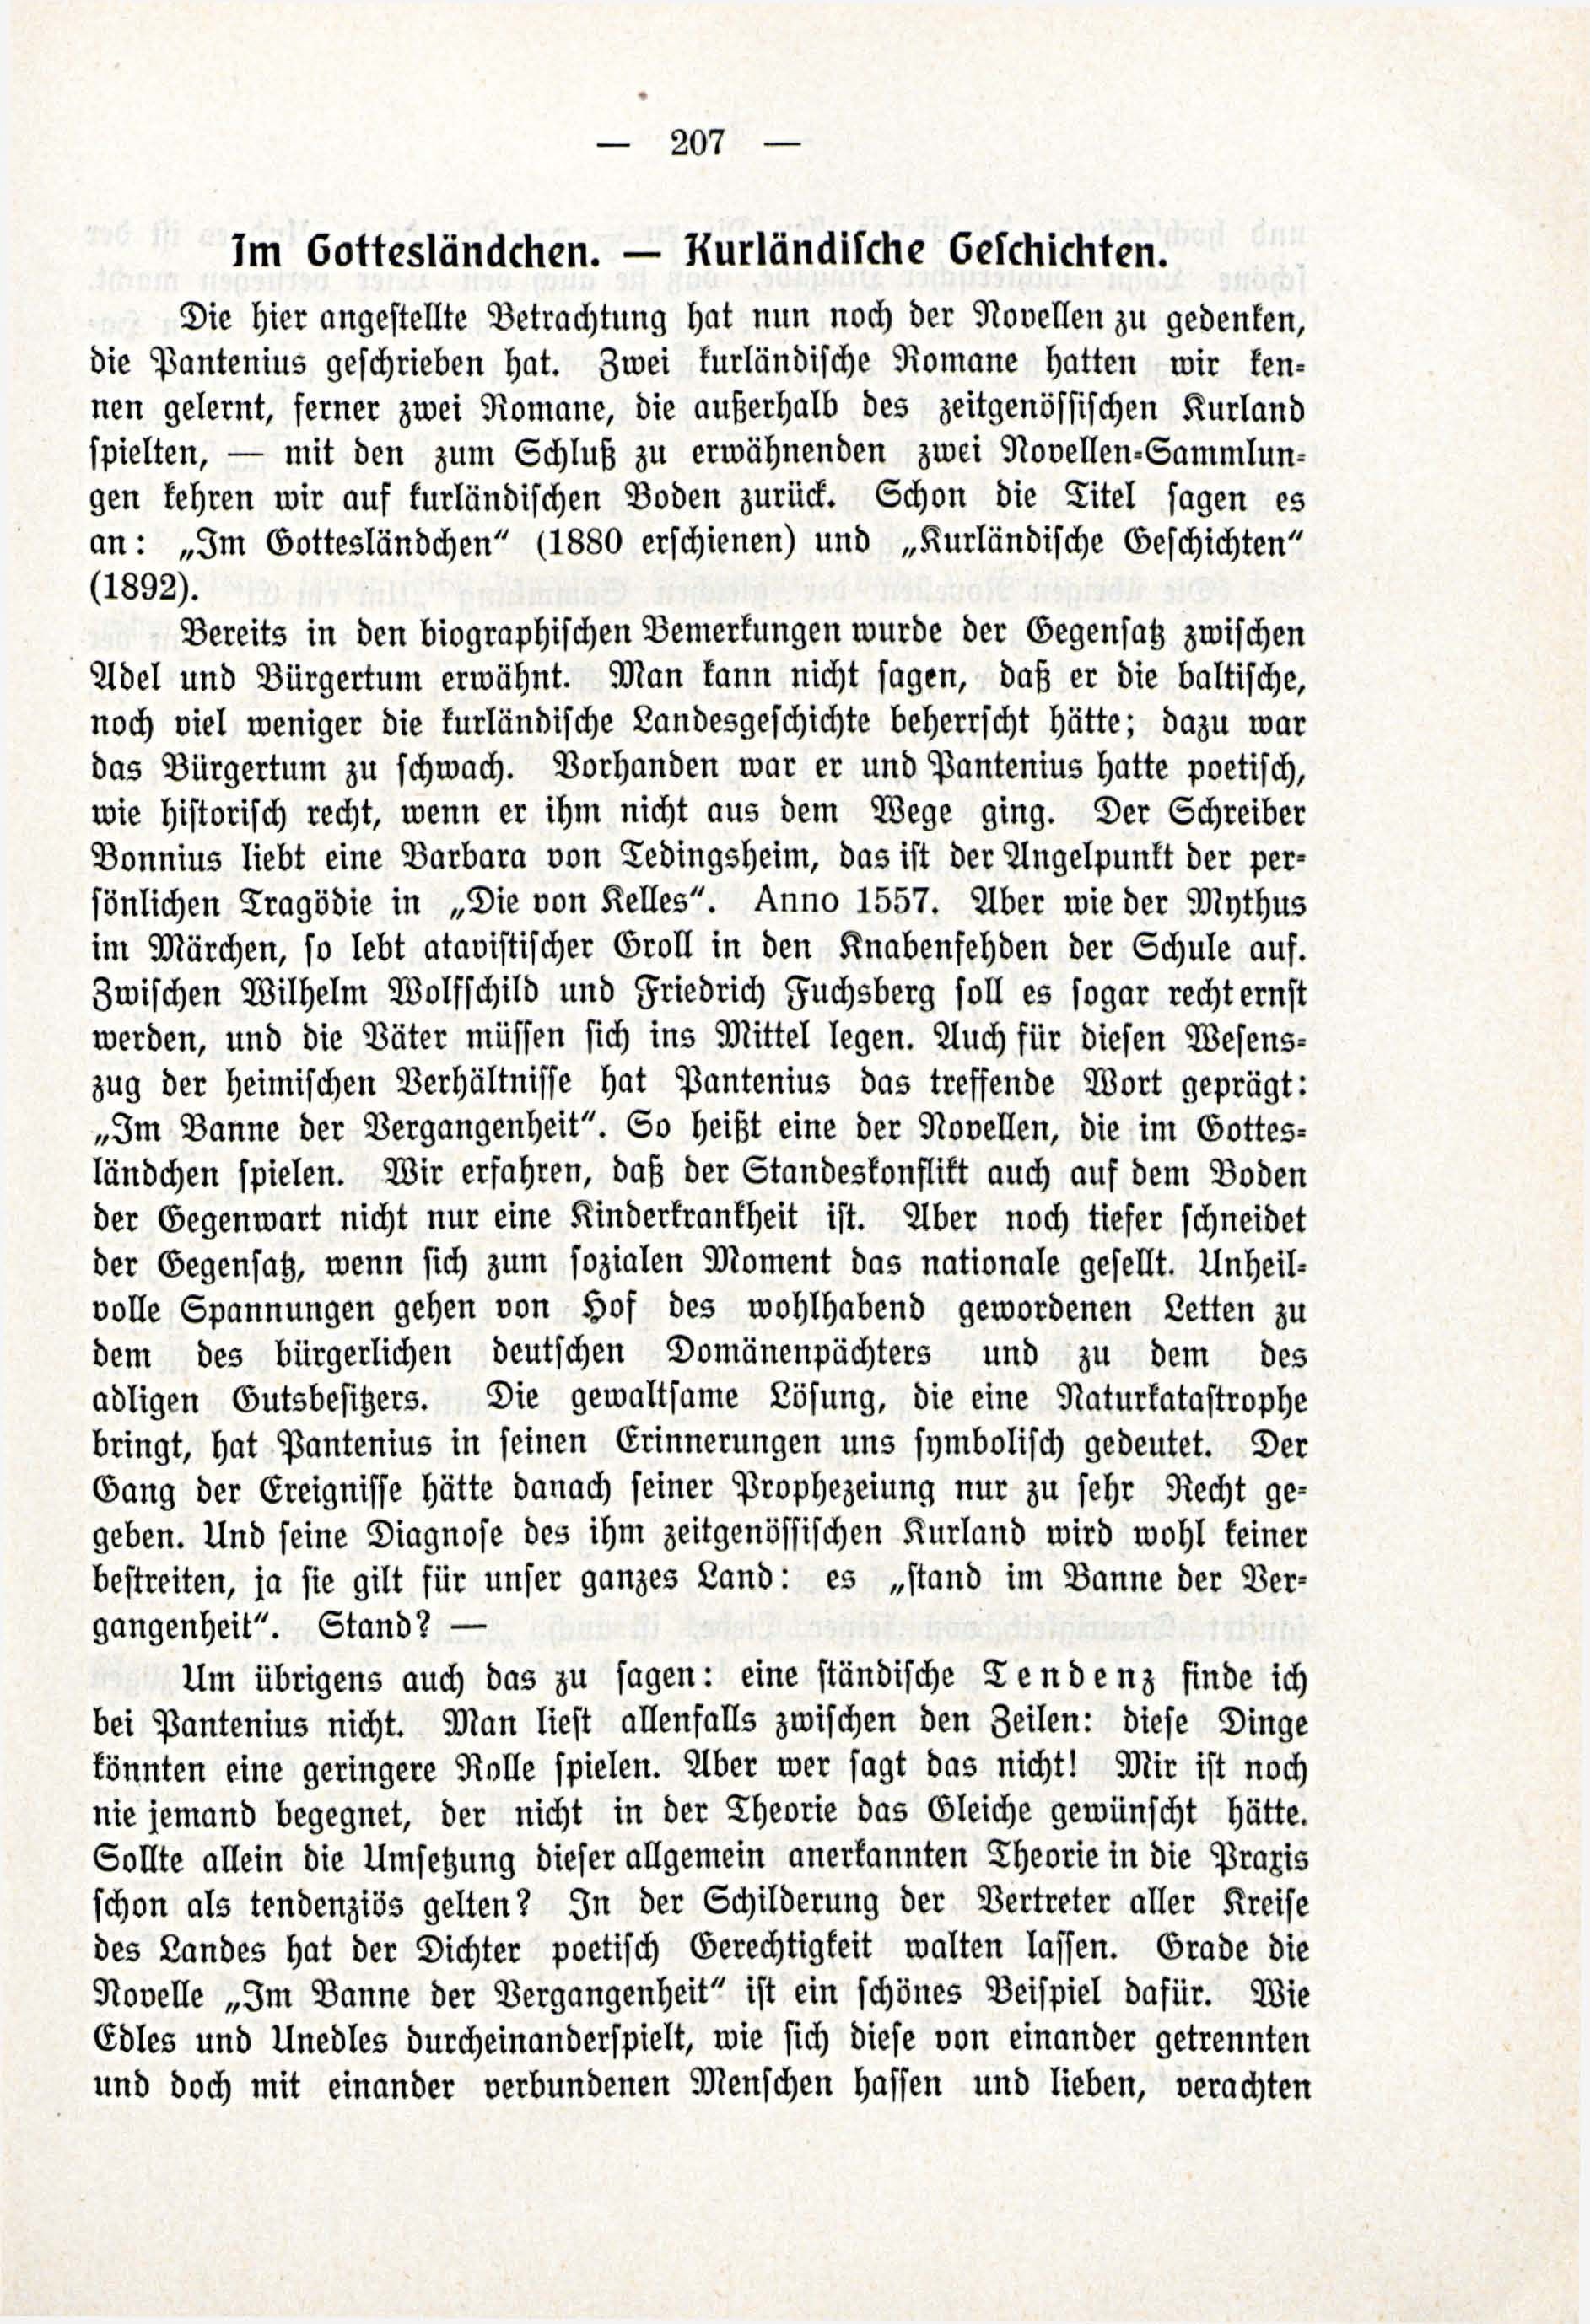 Deutsche Monatsschrift für Russland [3/03] (1914) | 53. (207) Haupttext